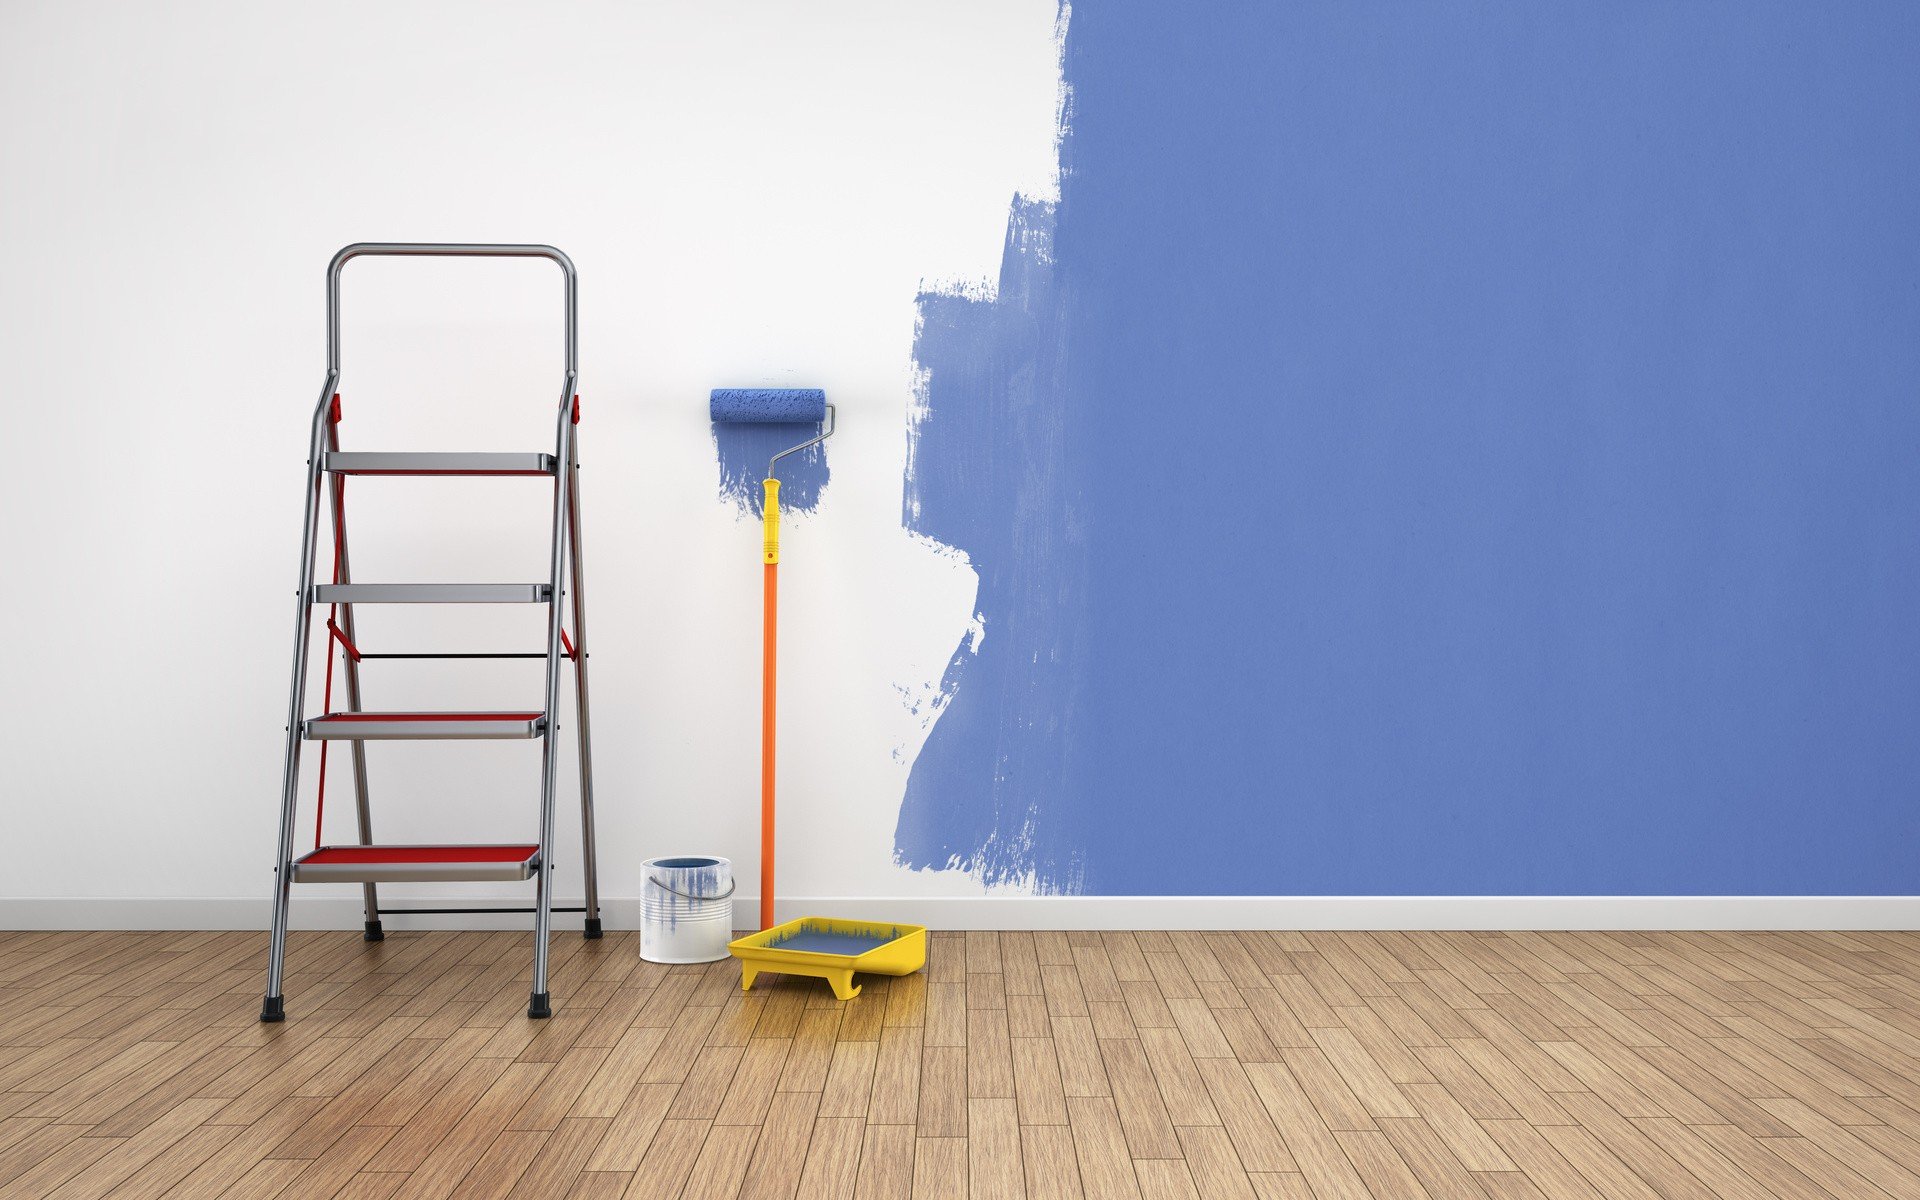 Jak przygotować się do malowania mieszkania. Poradnik | RegioDom